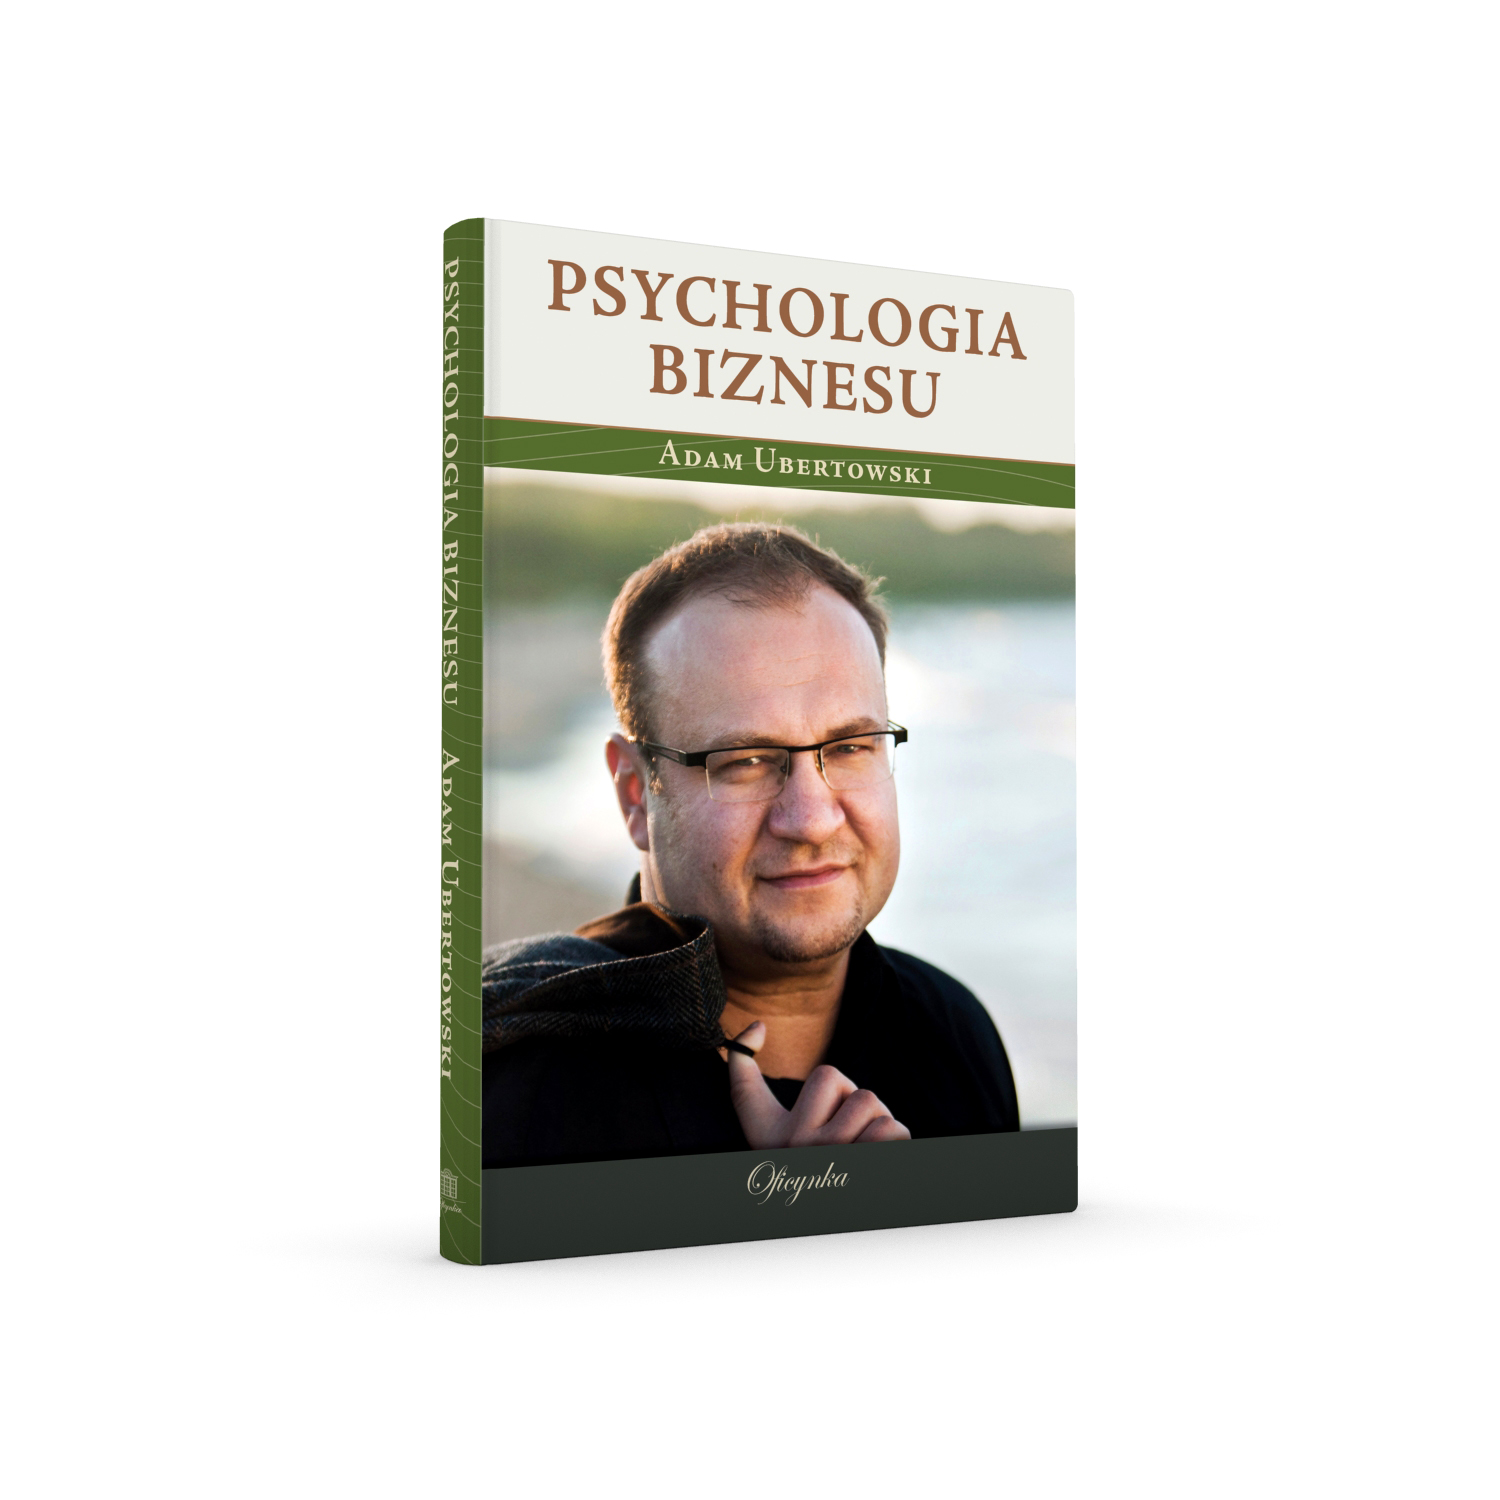 Adam Ubertowski - „Psychologia biznesu” - podręcznik dla każdego praktyka biznesu